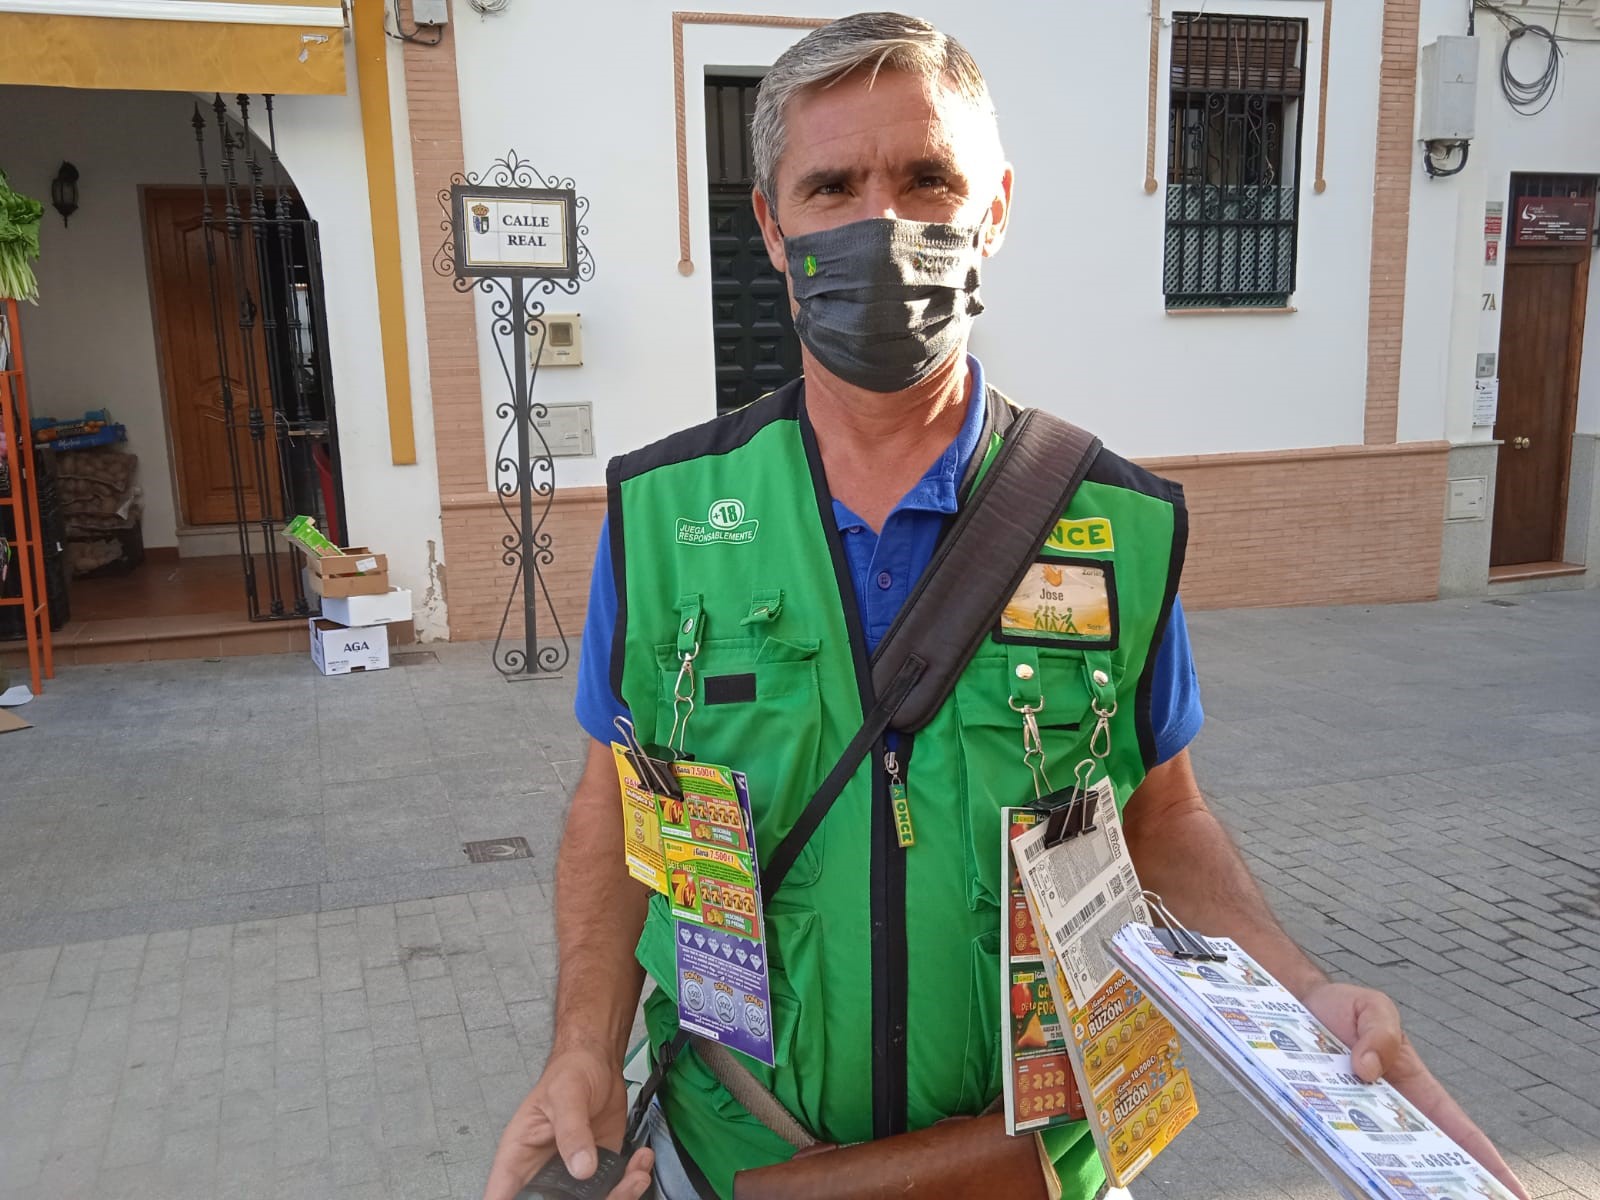 Fin de semana de "sueldazos" de la ONCE en la provincia de Sevilla